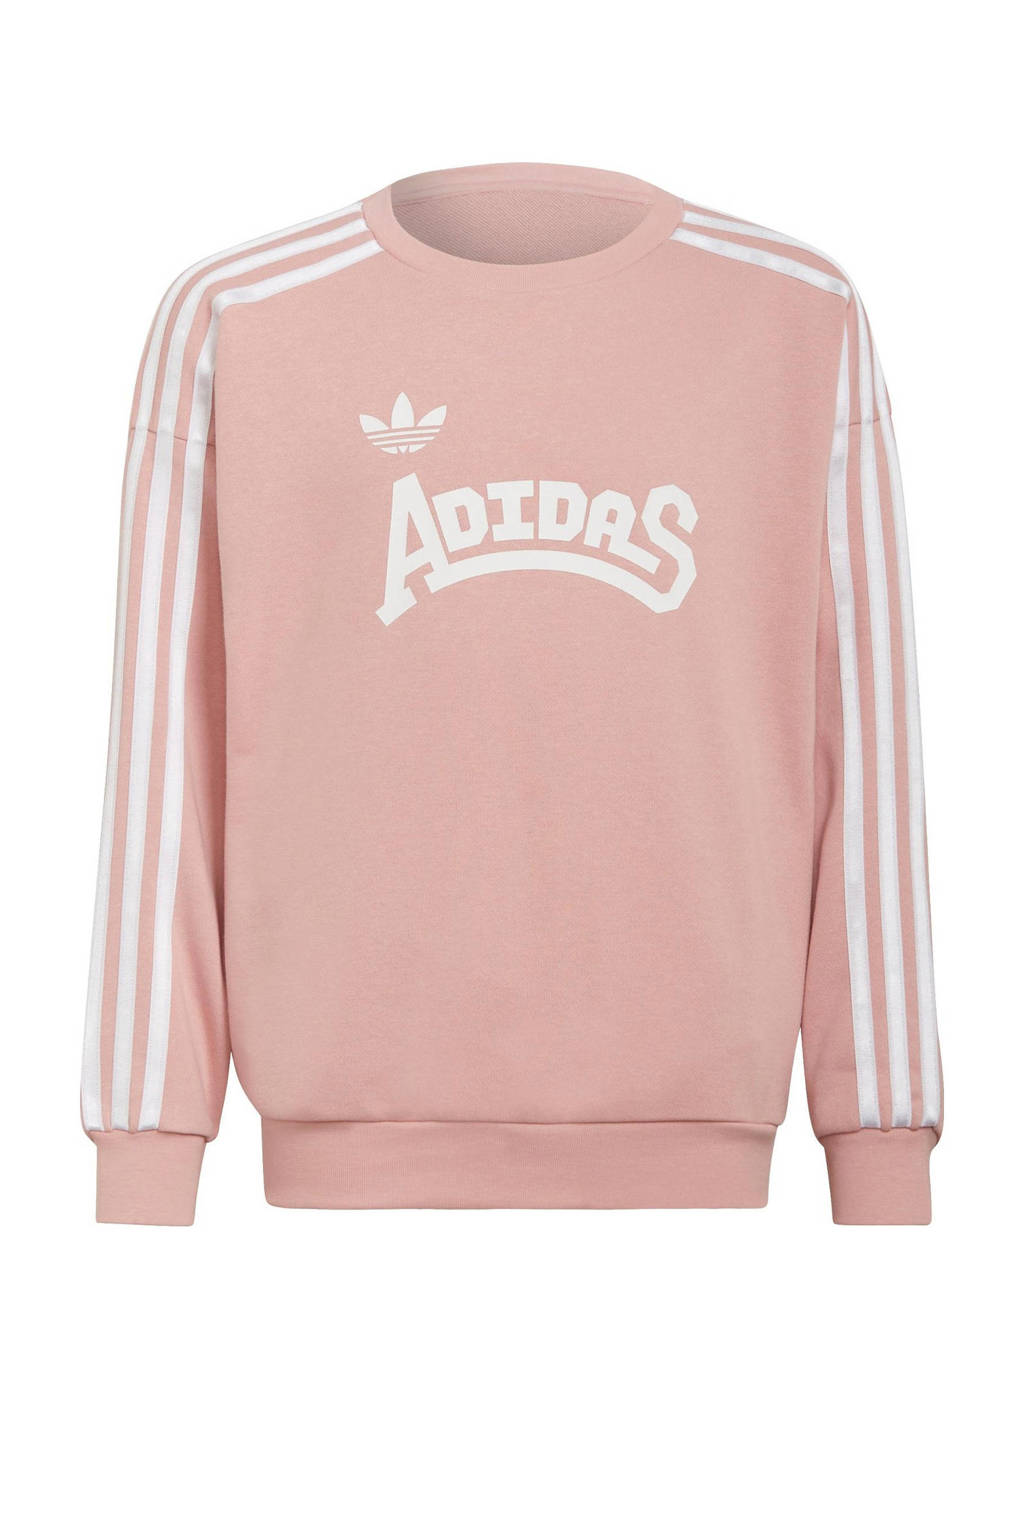 adidas Originals sweater lichtroze/wit